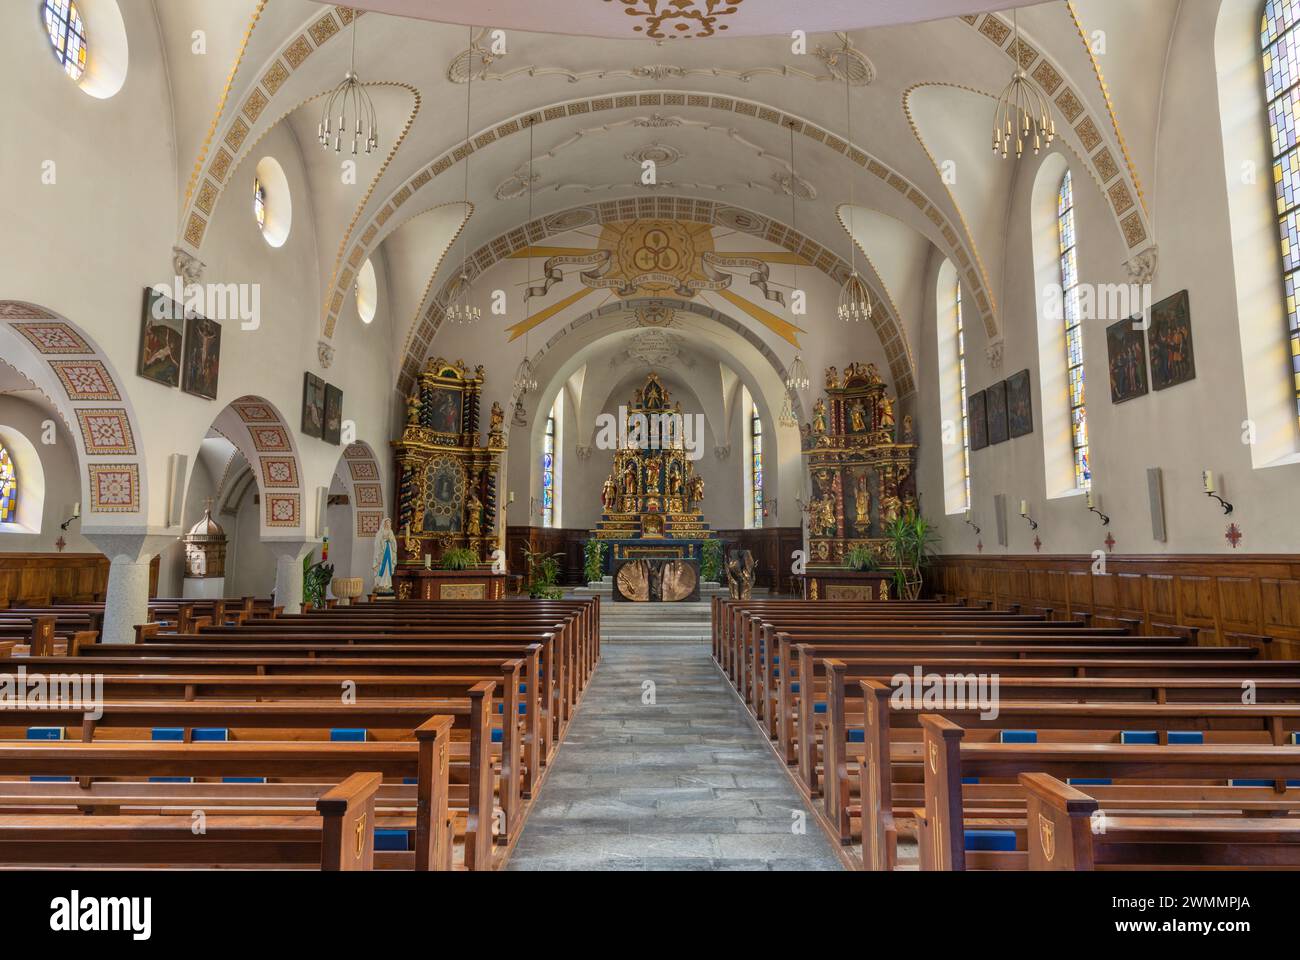 Tasch - The nave of Pharish church. Stock Photo